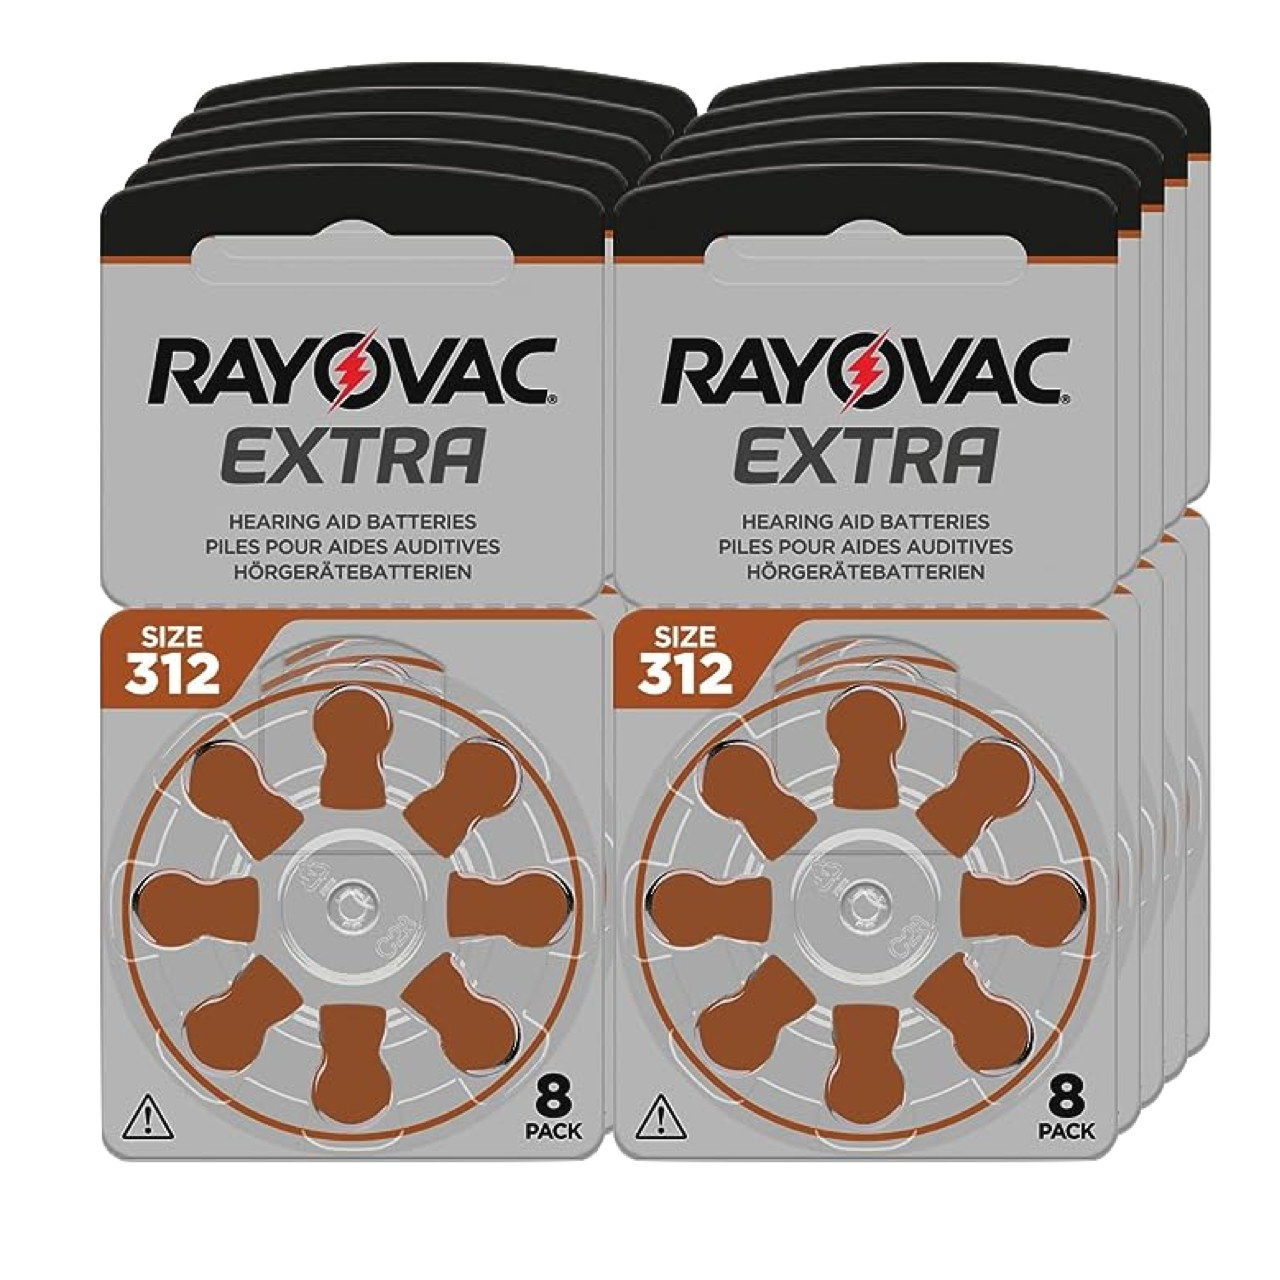 10 x 8er Blister Hörgerätebatterien der Marke Rayovac Extra in der Größe p312 und Farbe braun